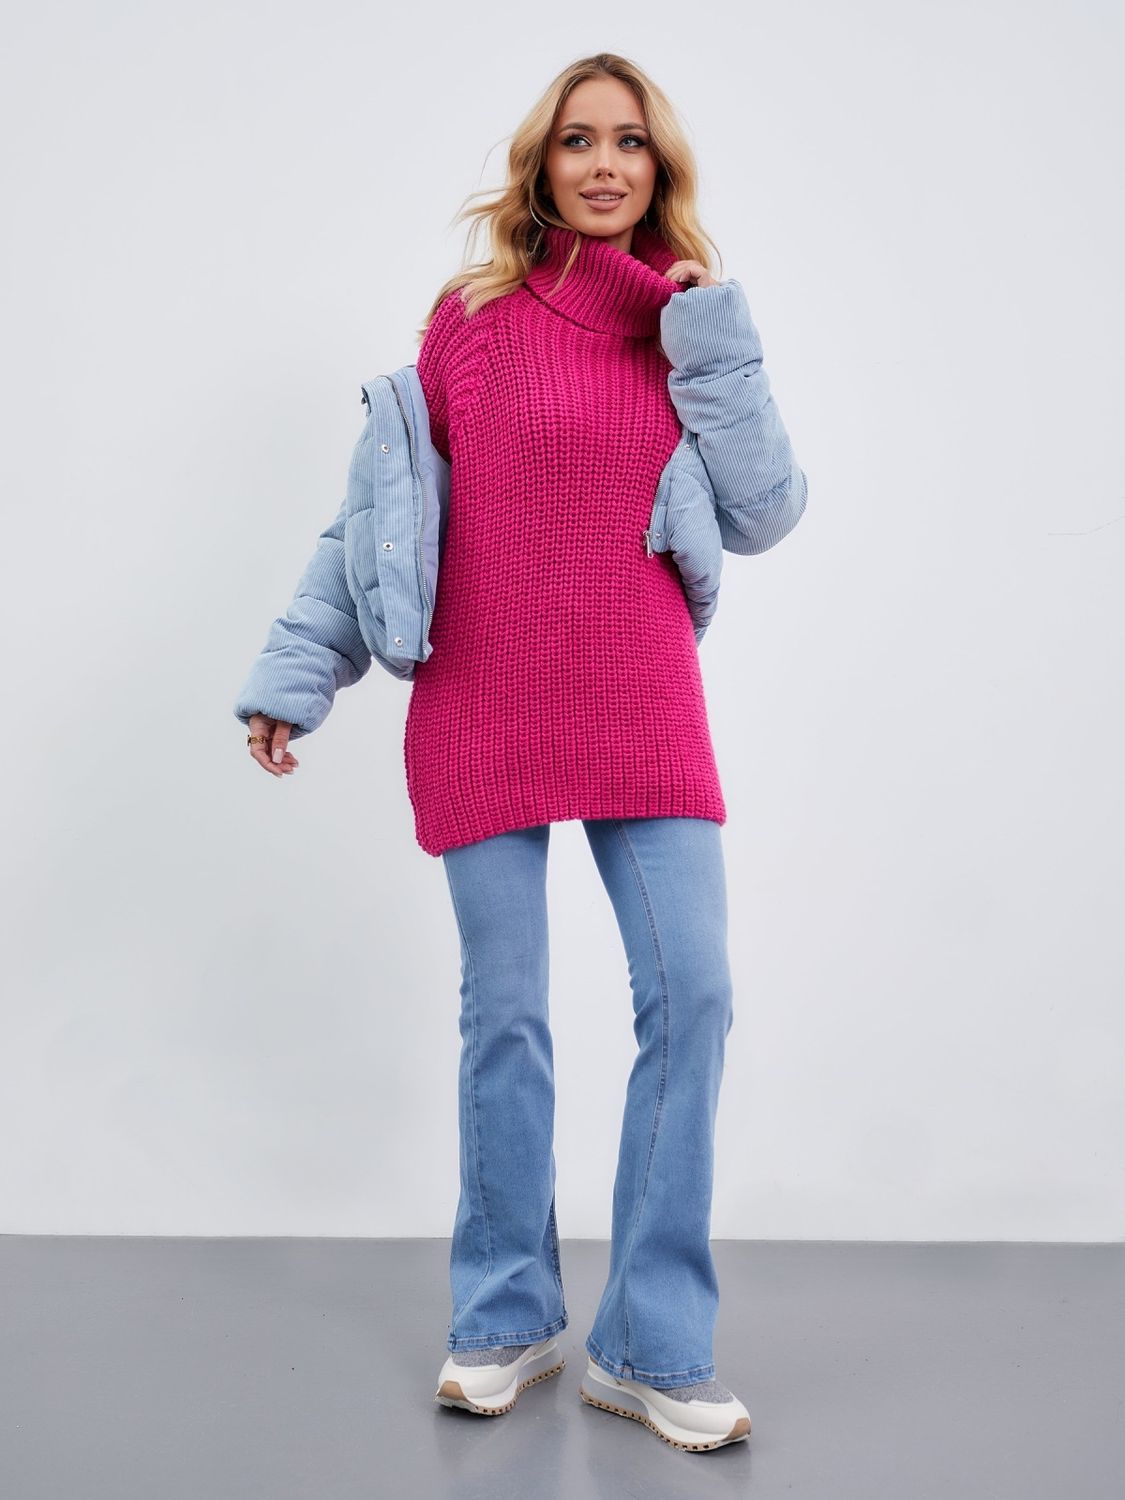 Об'ємний в'язаний светр з горлом рожевого кольору - фото